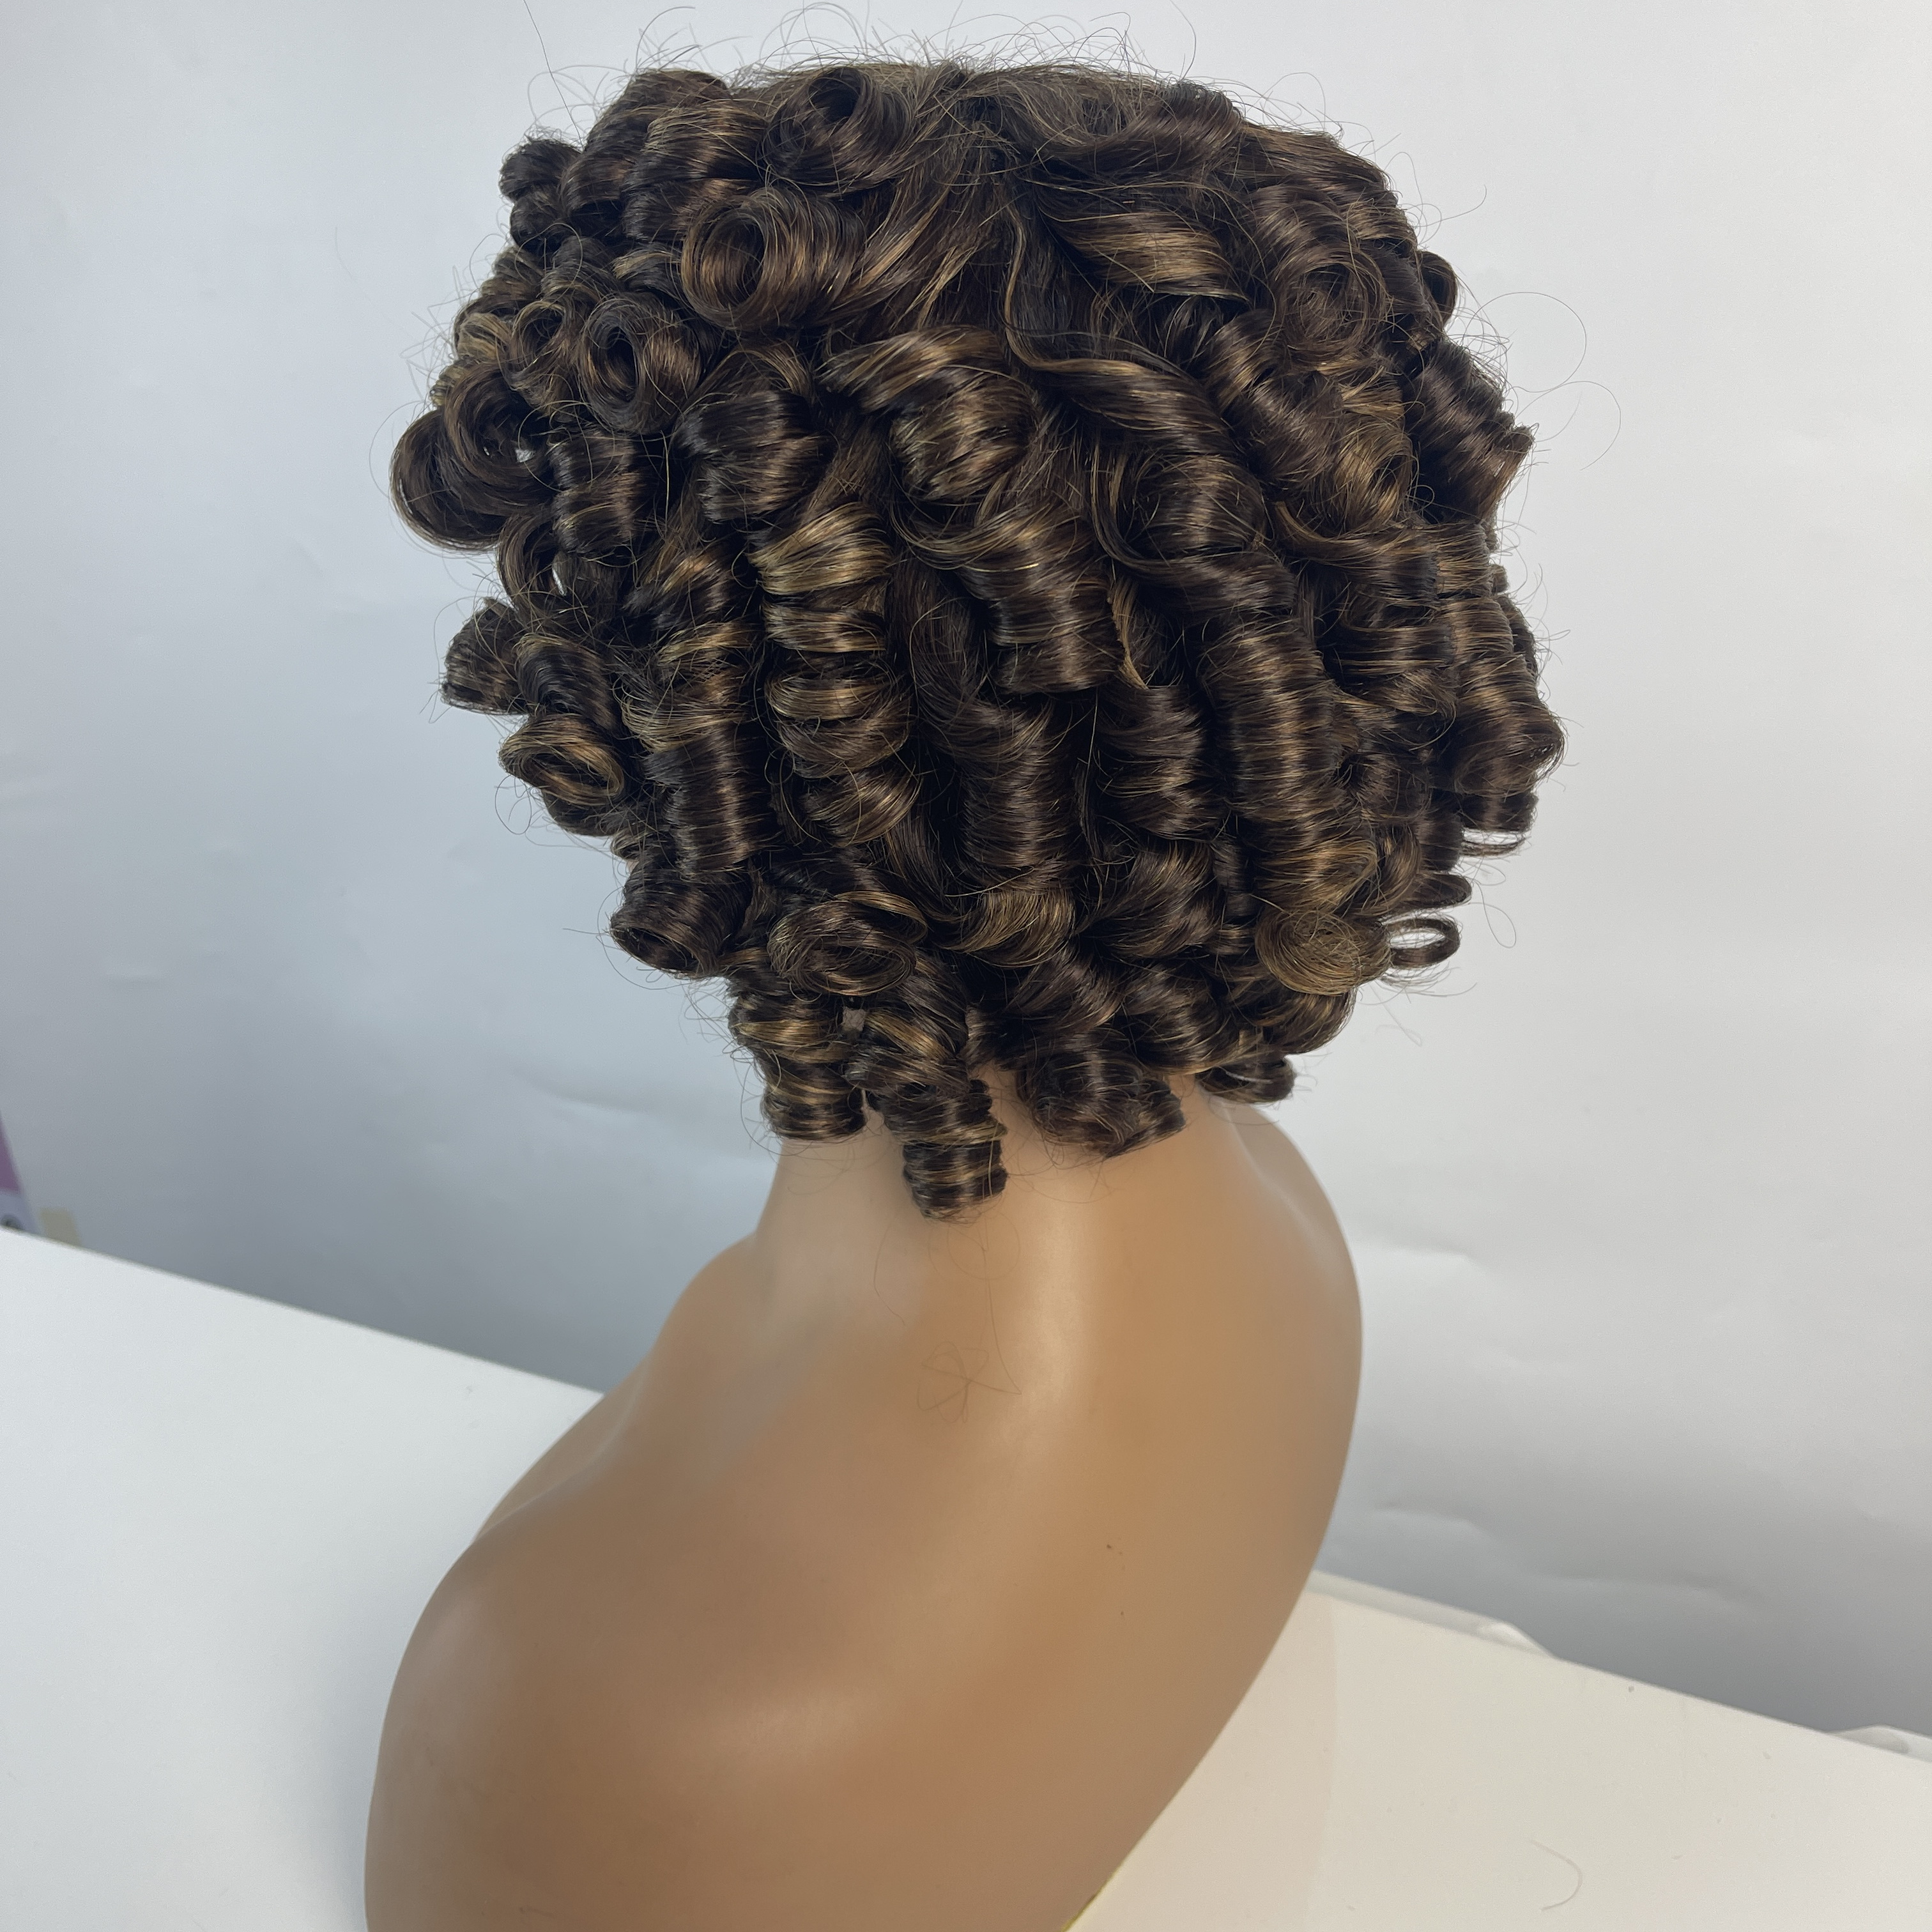 Peluca corta y rizada para mujeres negras con flequillo hinchable esponjoso cabello humano rizado 2 tonos ombre más oscuro marrón corto rizado